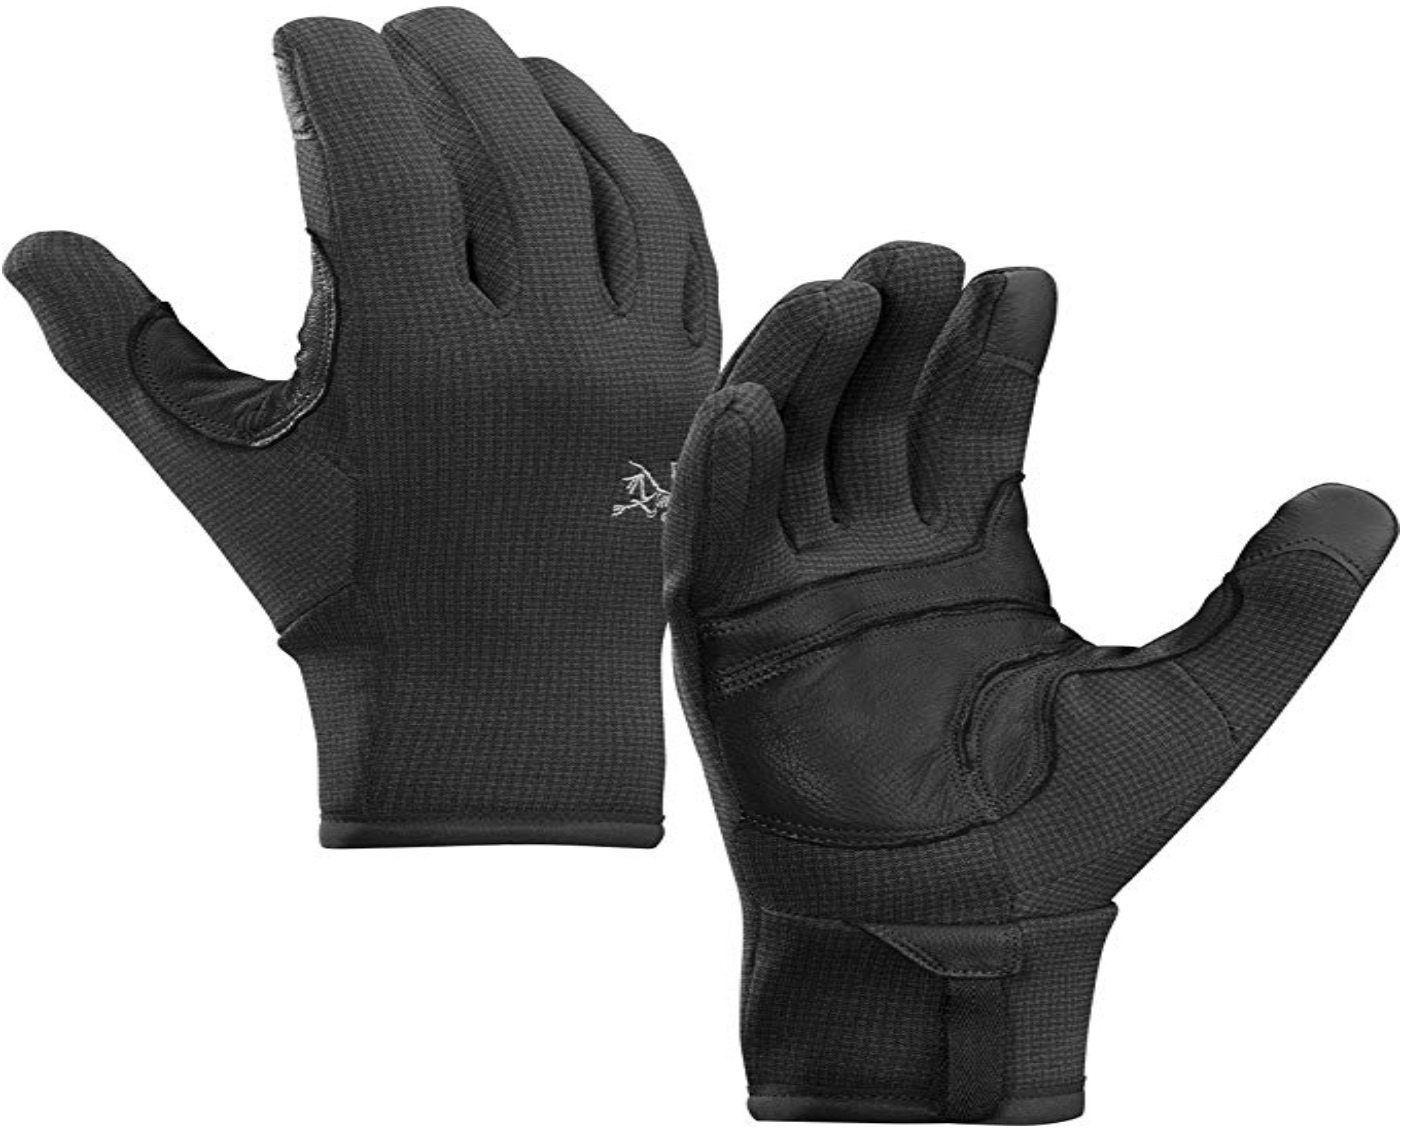 super warm gloves ladies